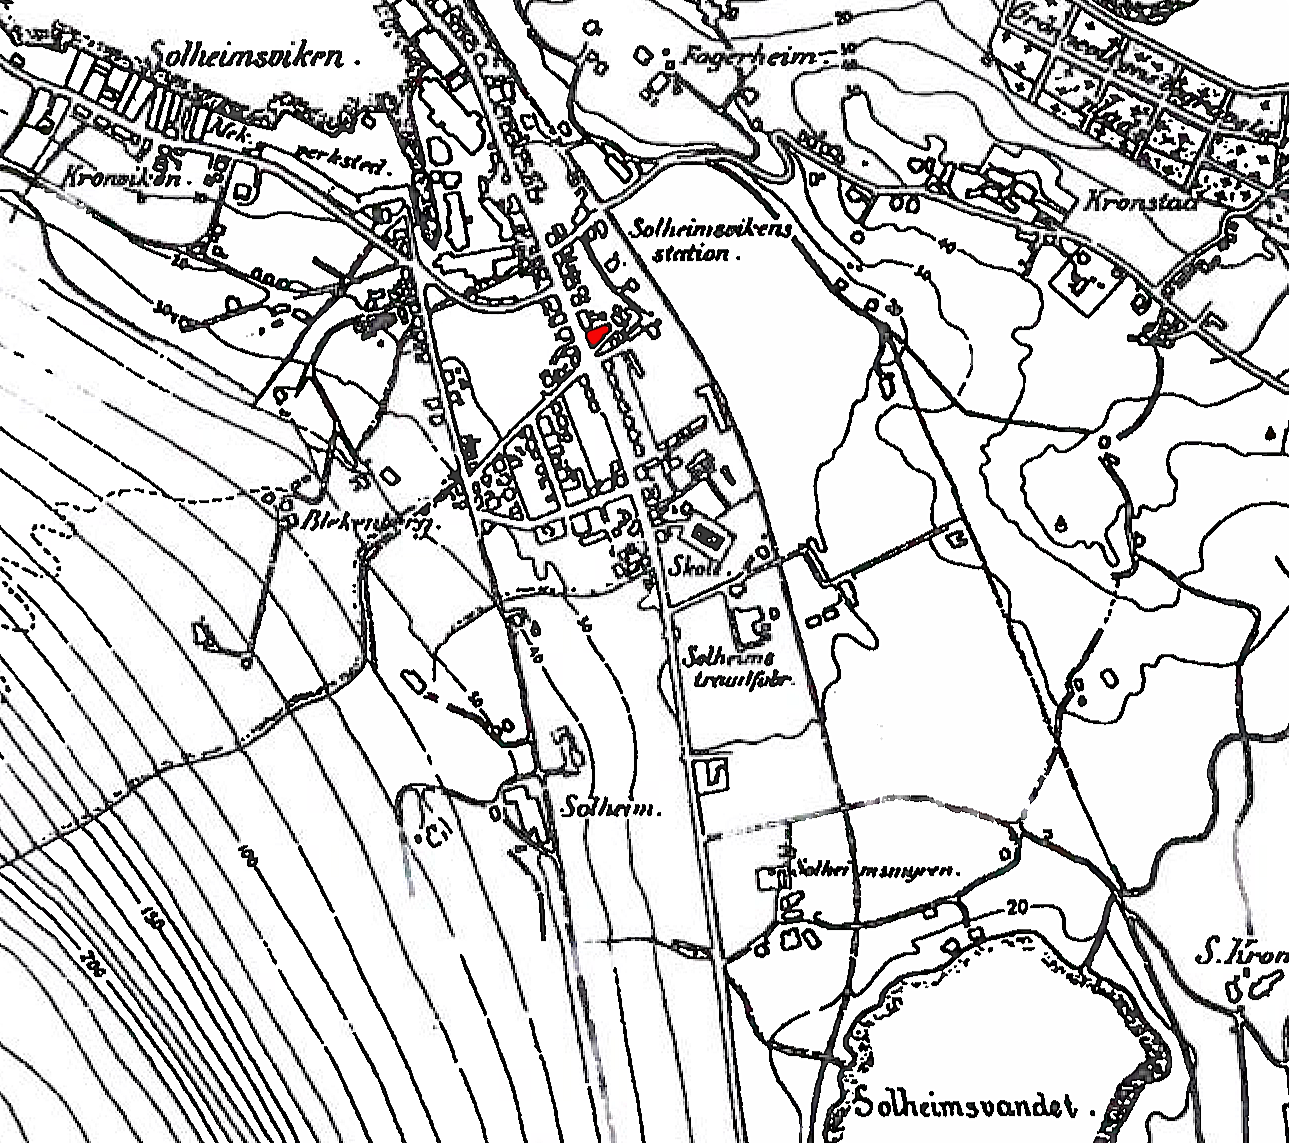 Kulturminnedokumentasjon. Solheimsgaten 58 6 Figur 2. Kart fra århundreskiftet (ukjent opphav). Solheimsgaten 58 er markert rødt og ligger ved sørgående hovedvei ut av sentrum.